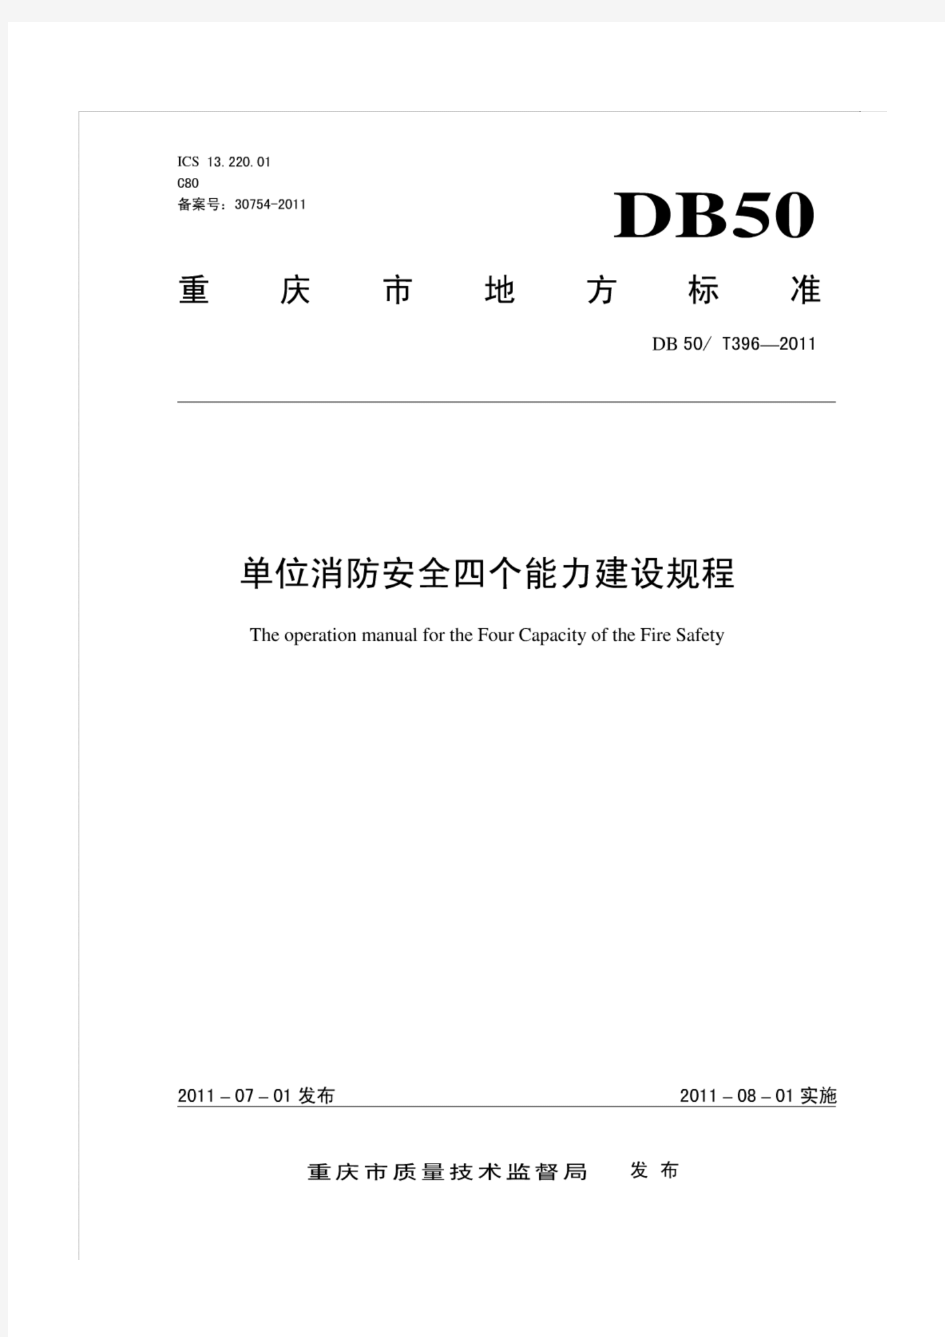 DB50 T396-2011 重庆市单位消防安全四个能力建设规程